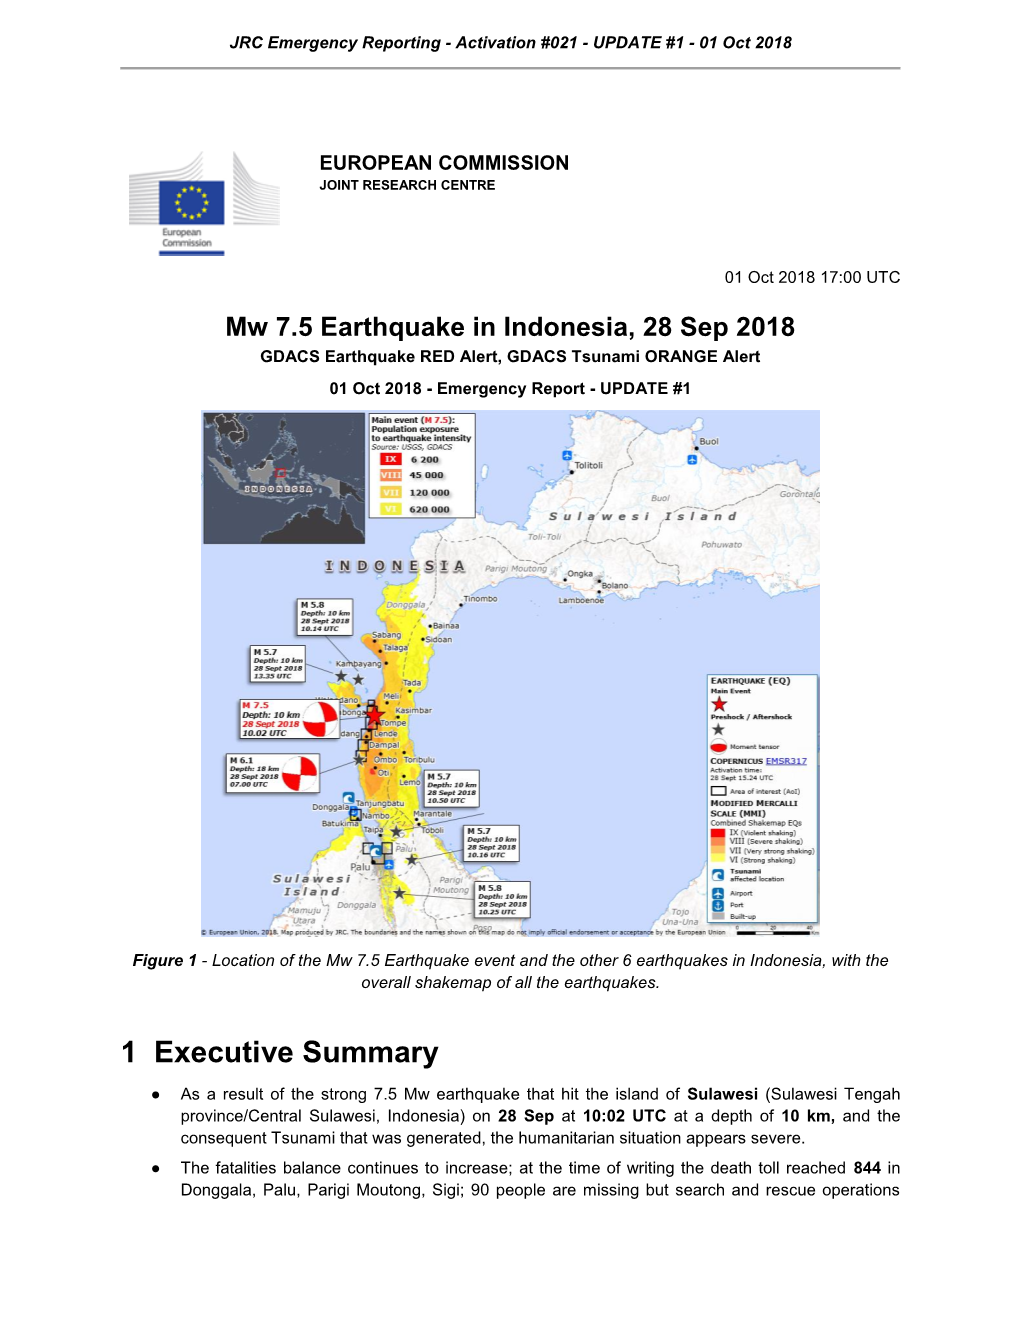 Mw 7.5 Earthquake in Indonesia, 28 Sep 2018 GDACS Earthquake RED Alert, GDACS Tsunami ORANGE Alert 01 Oct 2018 - Emergency Report - UPDATE #1